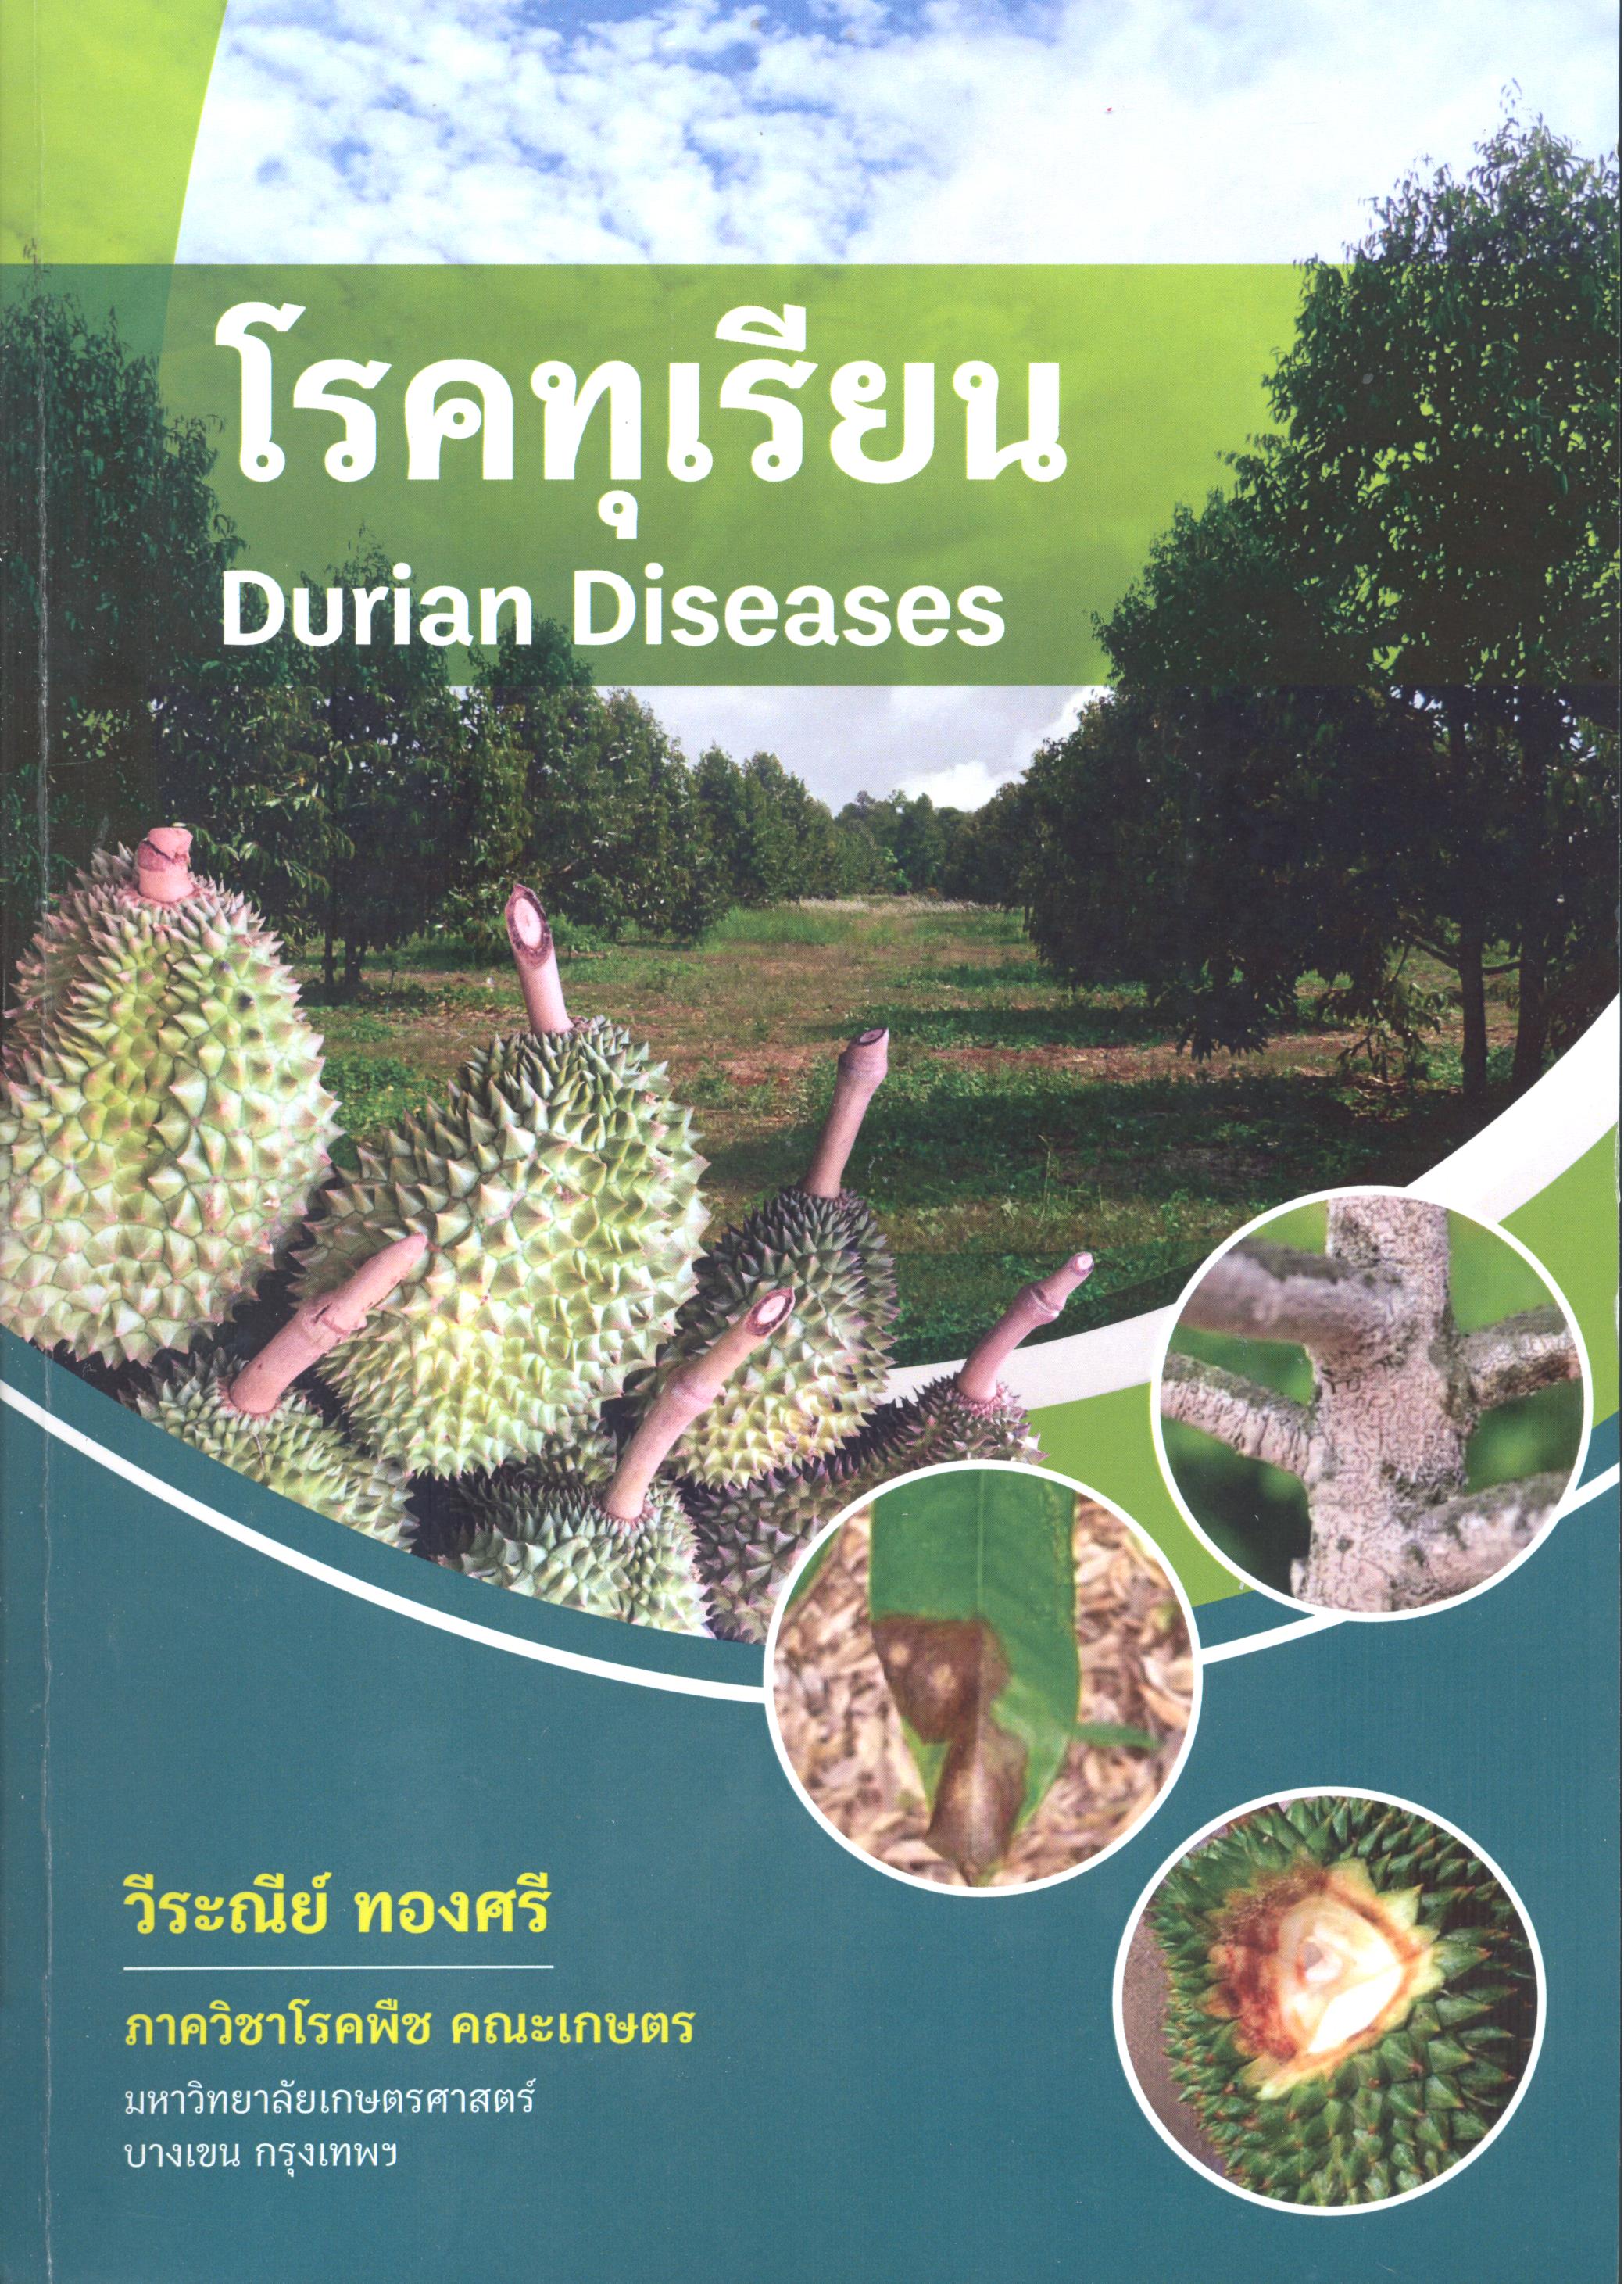 โรคทุเรียน = Durian diseases 